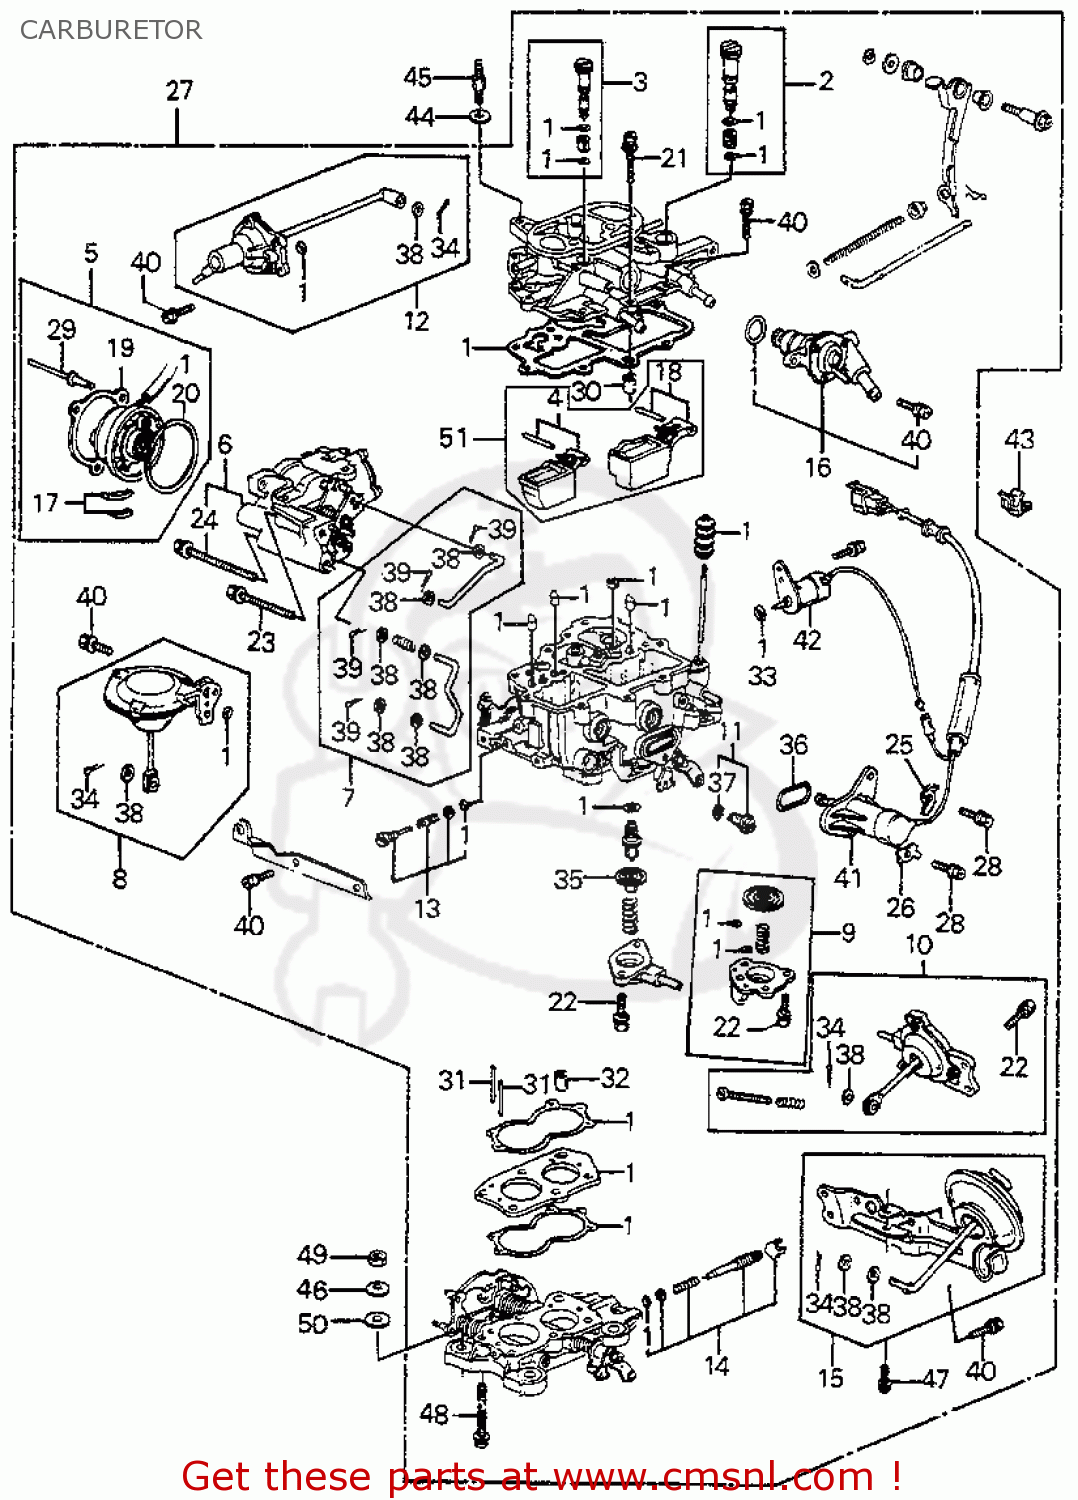 1985 Accord carburetor honda